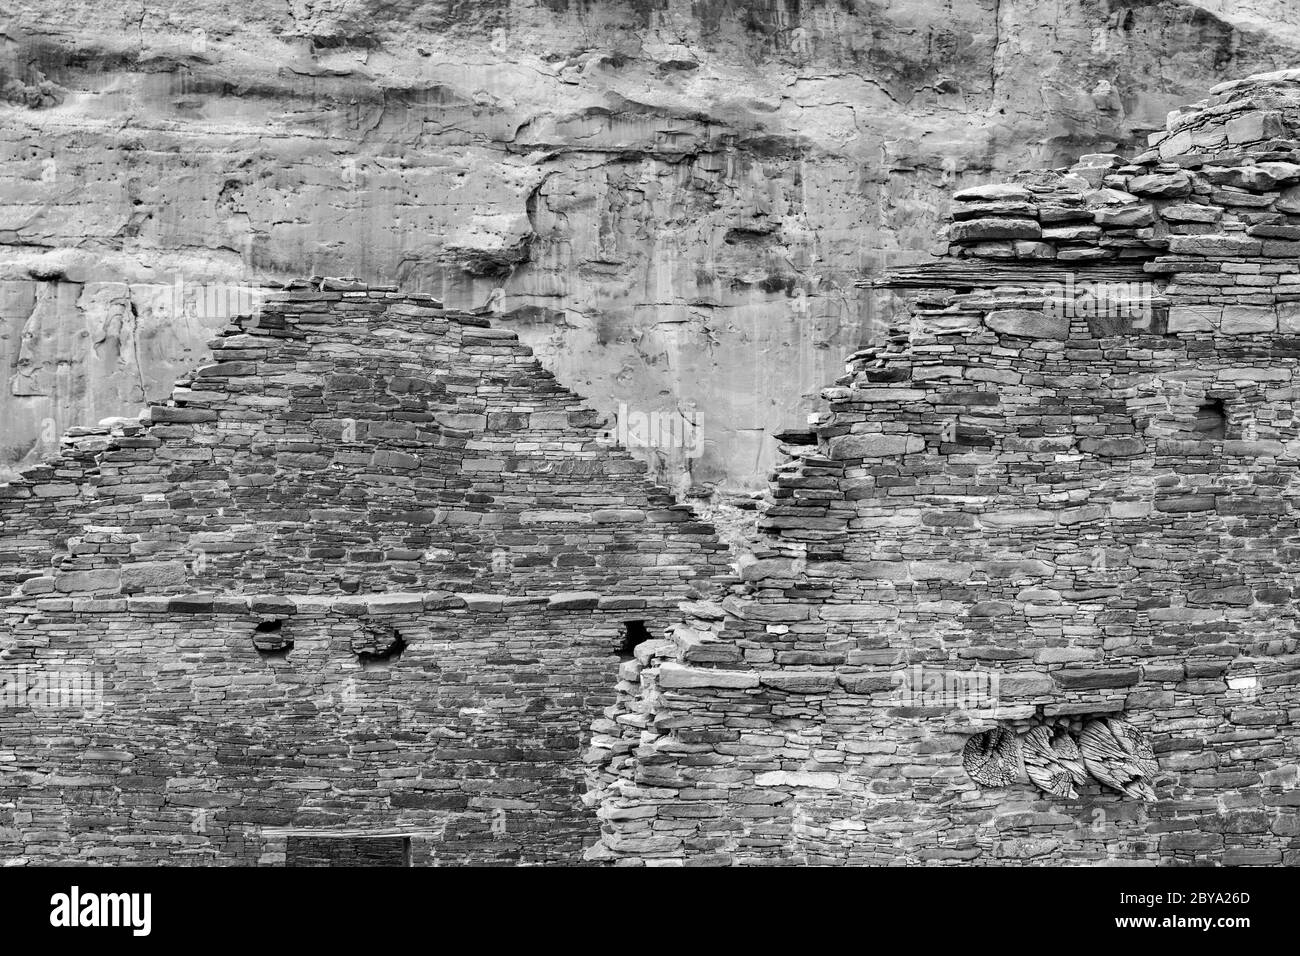 NM00614-00-BW-2...NUEVO MÉXICO - muros de piedra masonaria en Chetro Ketl en el Parque Histórico Nacional de la Cultura Chaco. Foto de stock